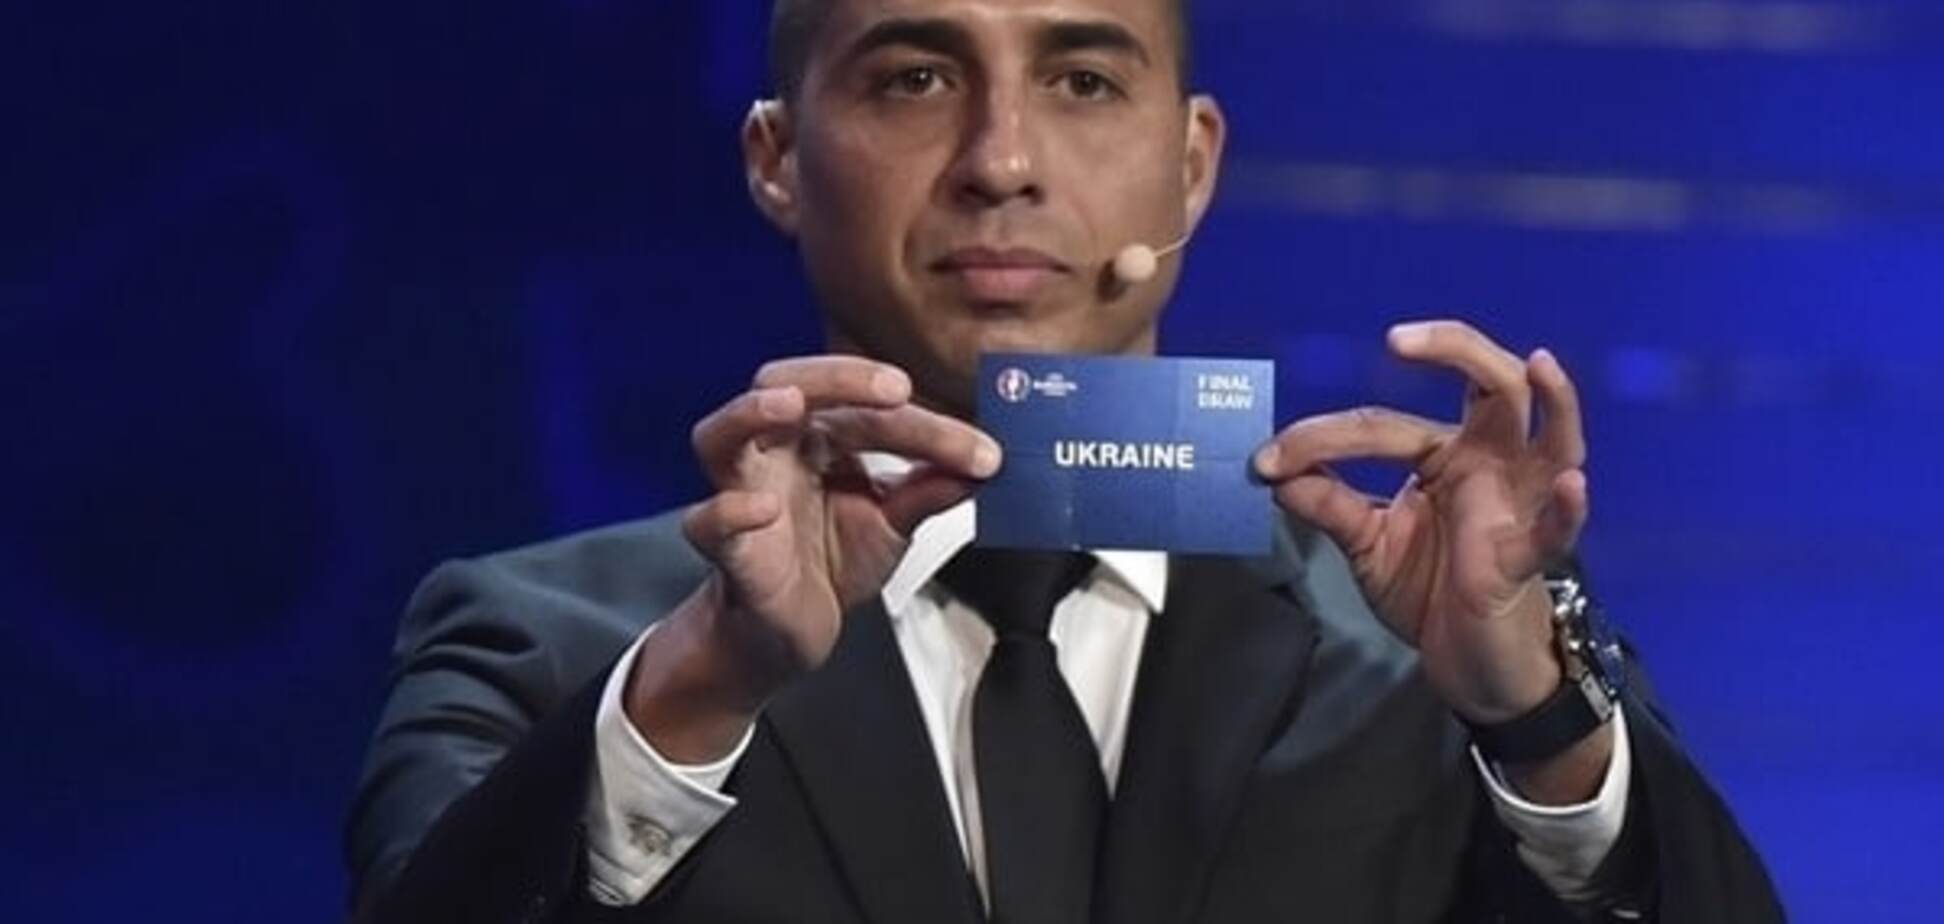 УЕФА извинился перед Украиной за ляп с Путиным